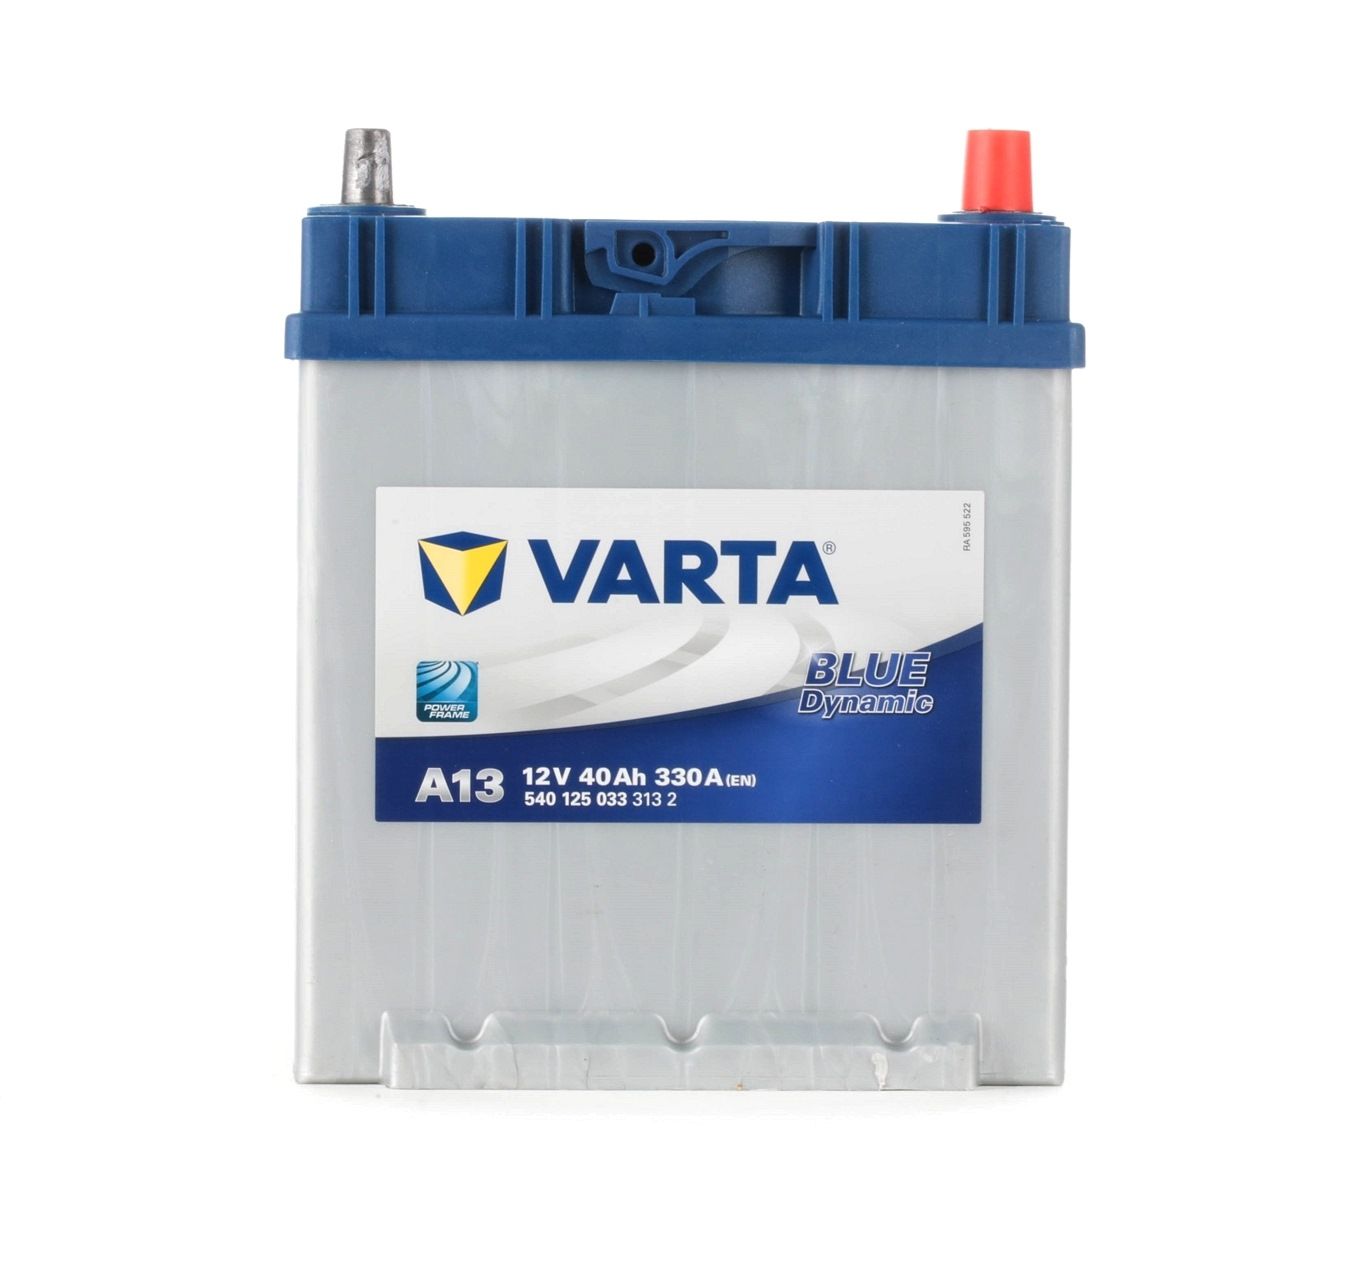 VARTA BLUE dynamic 5401250333132 Batterie de démarrage 12V 40Ah 330A B01 Batterie au plomb